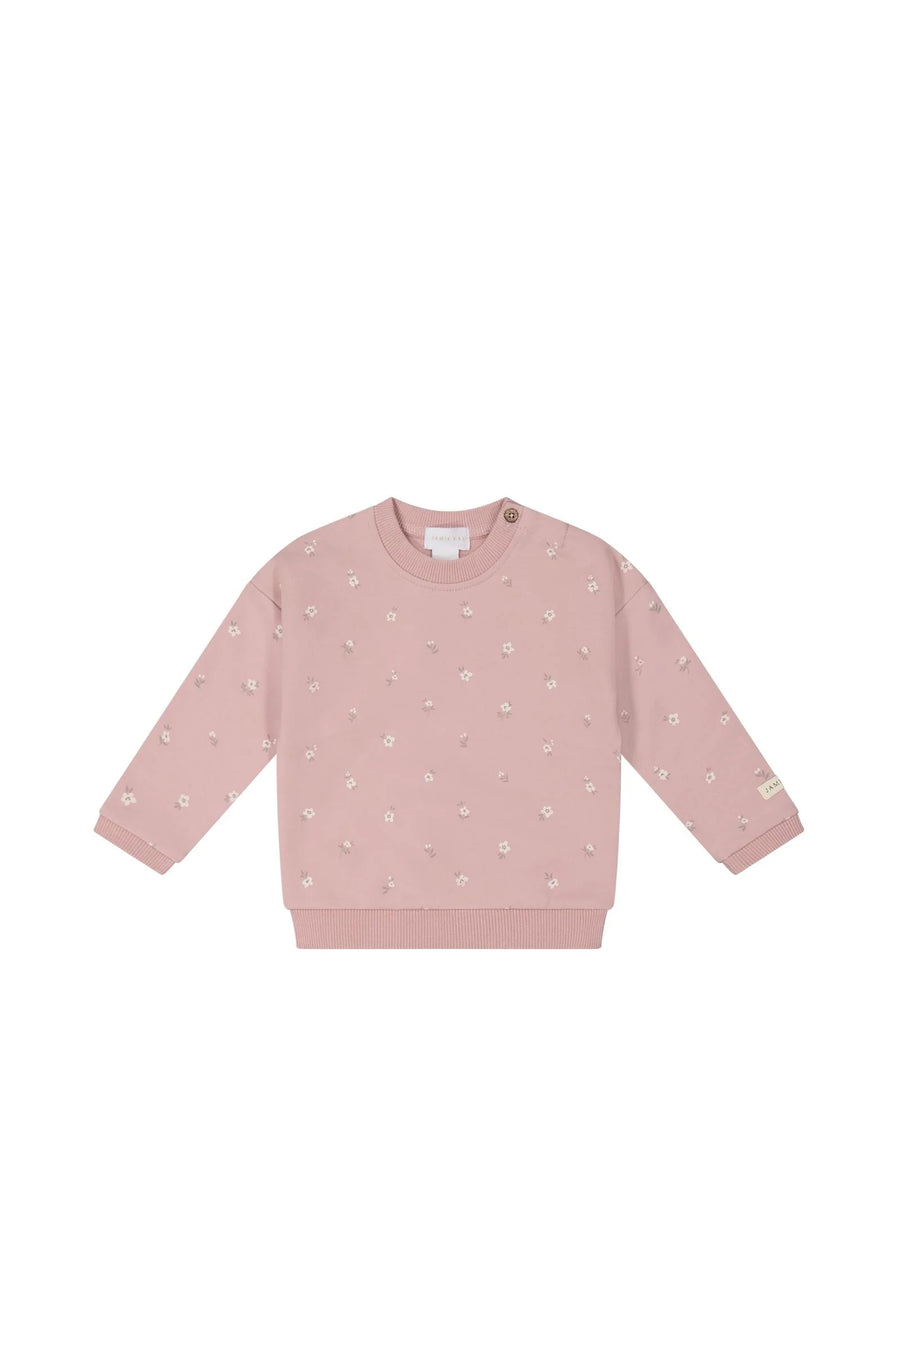 Organic Cotton Sweatshirt - Goldie Rose Dust